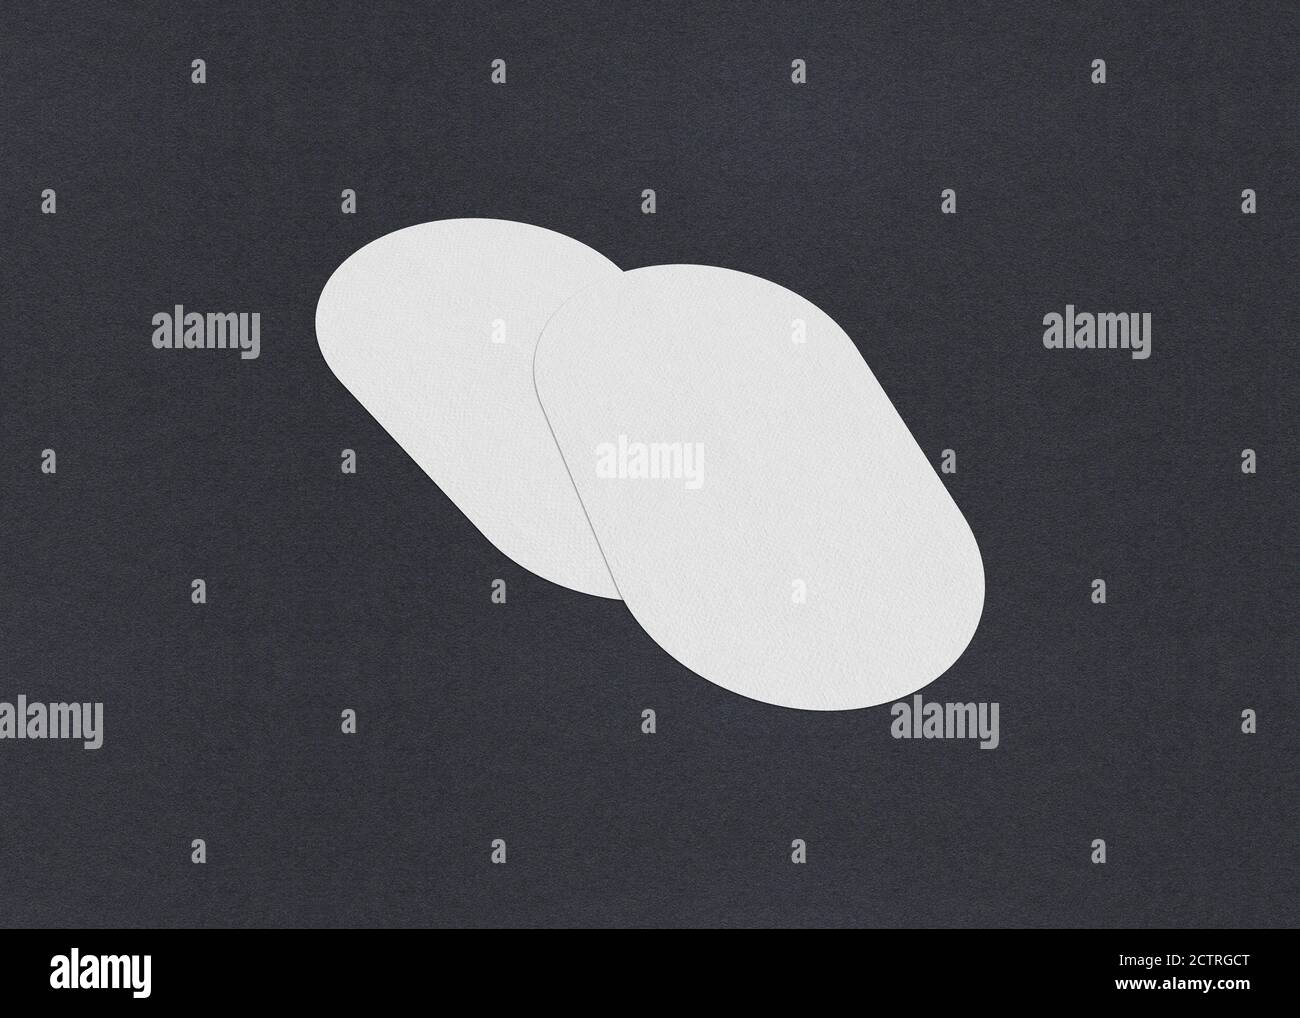 Leere weiße Visitenkarten-Mockup-Stapel auf grauem texturiertem Papierhintergrund. Stockfoto